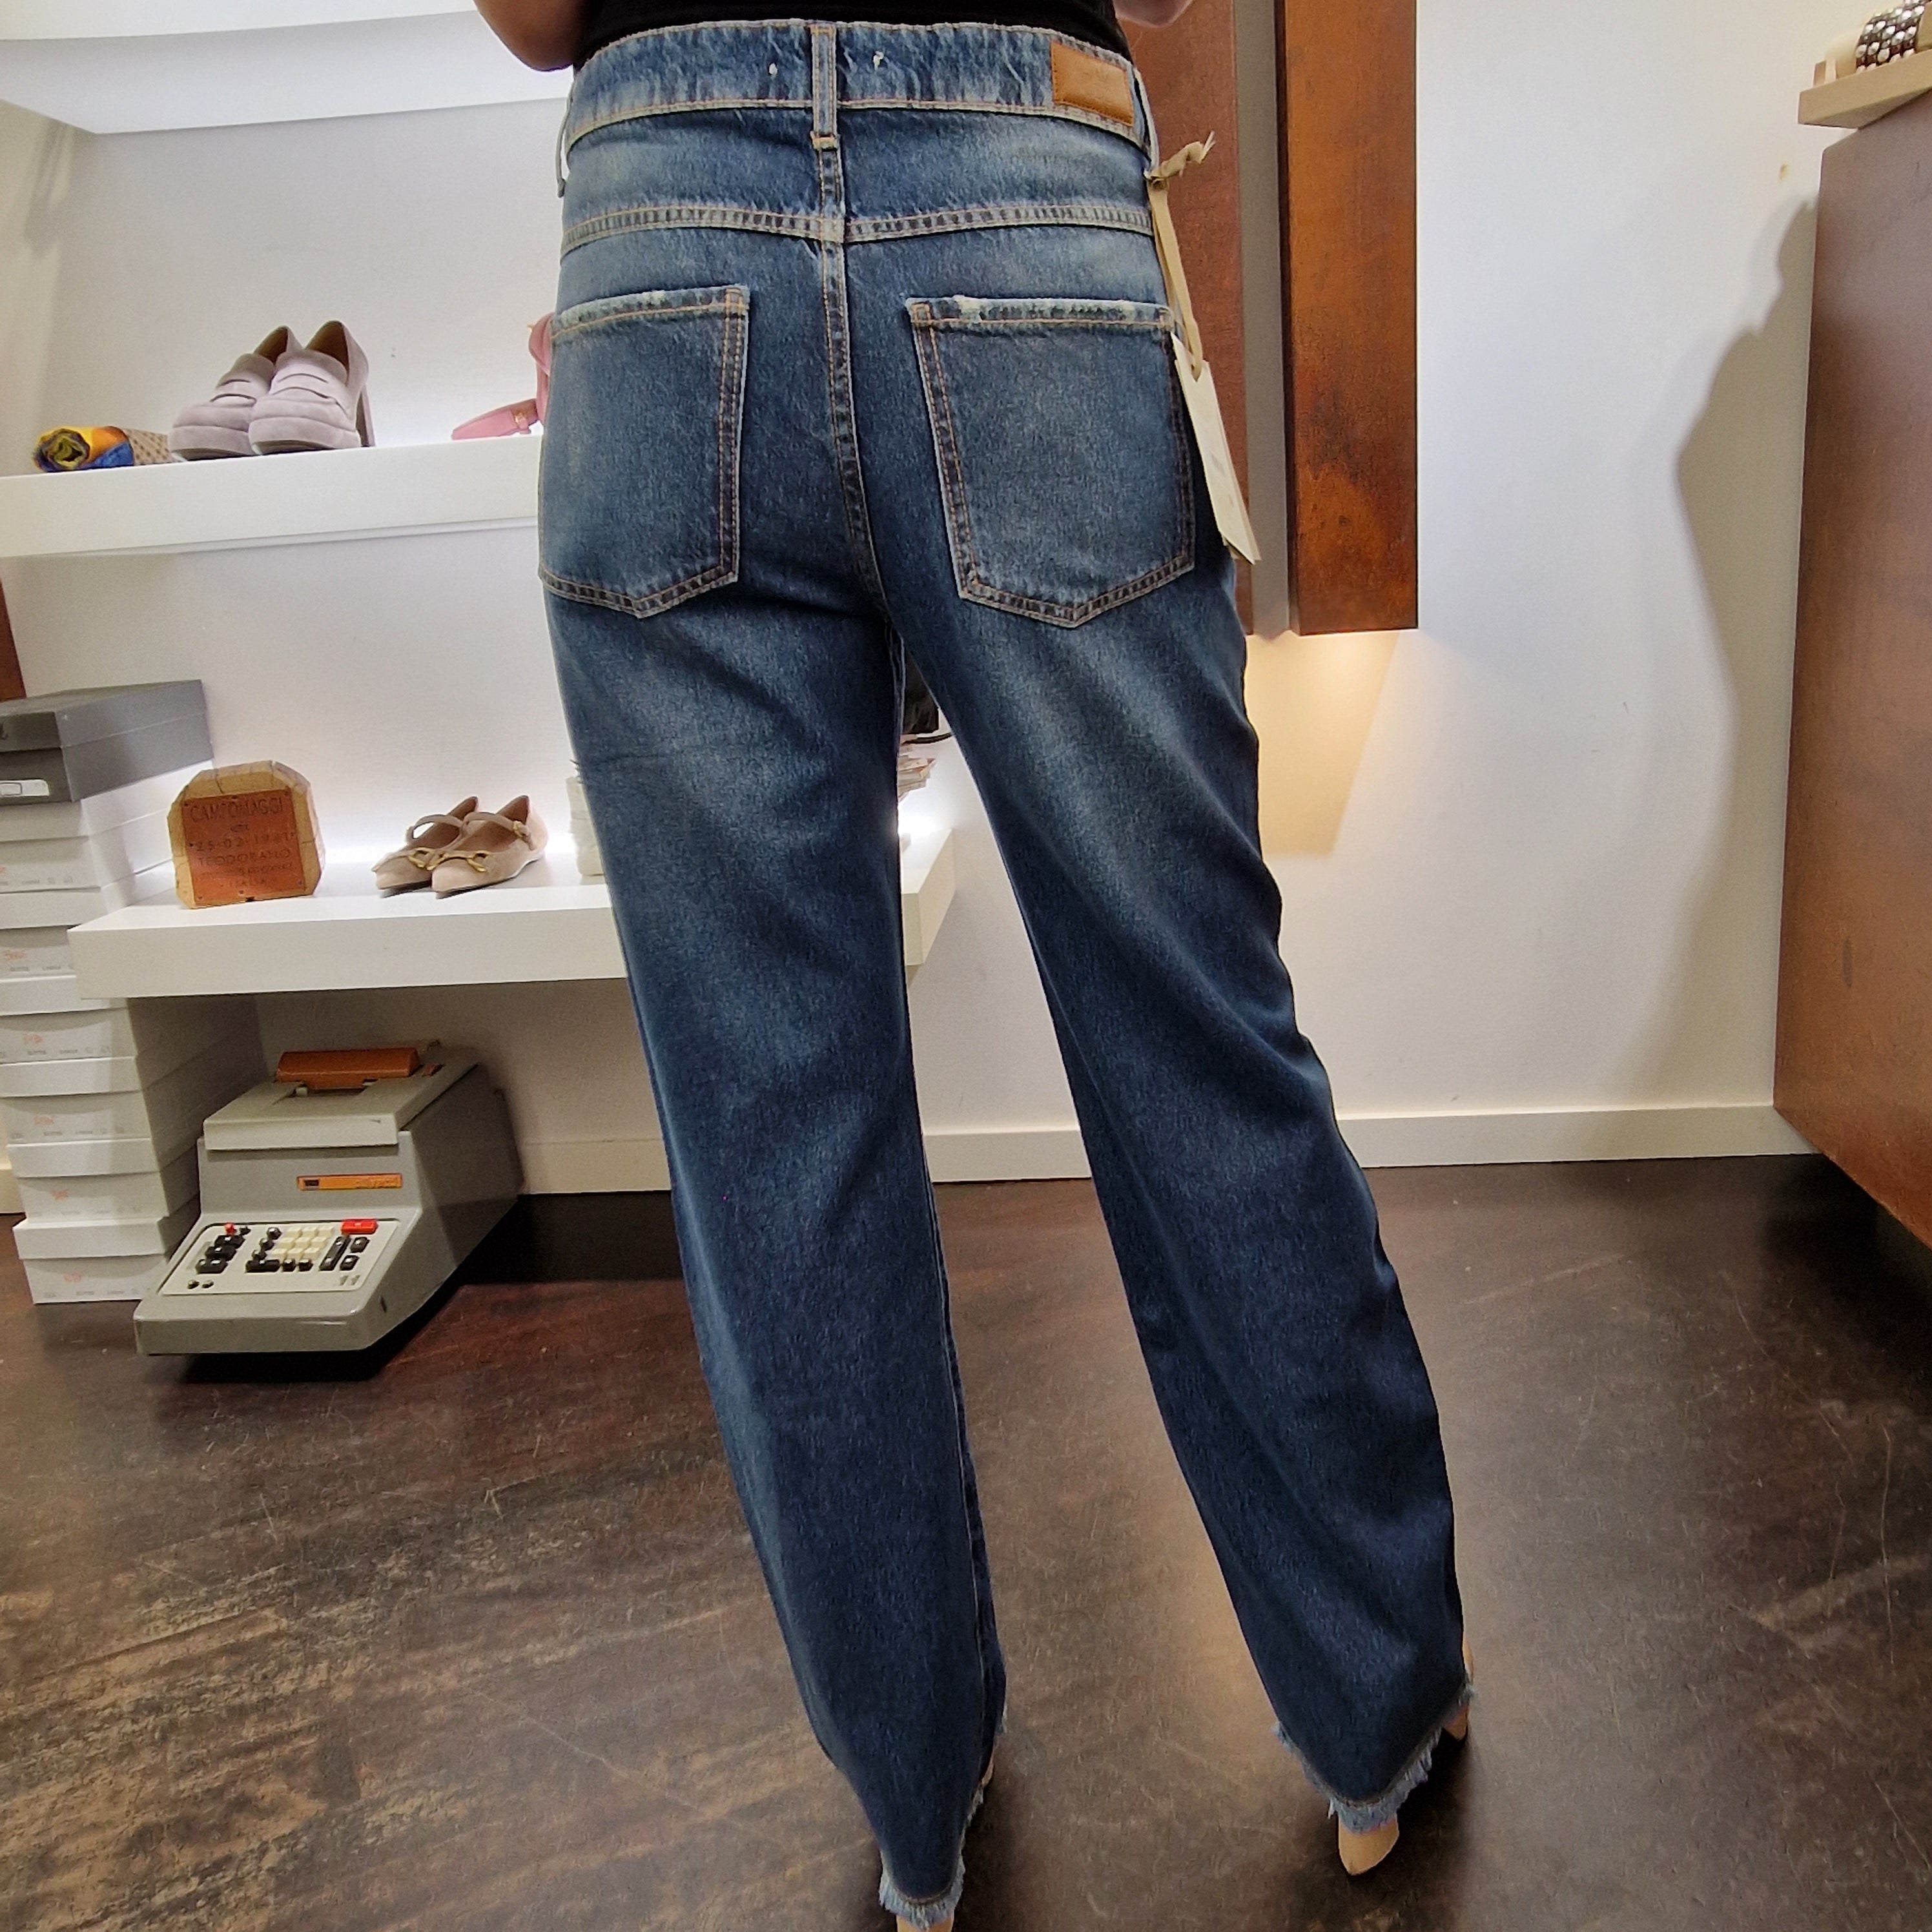 Pantalone jeans trattatamento con leggera lamina trasparente argento 008-p